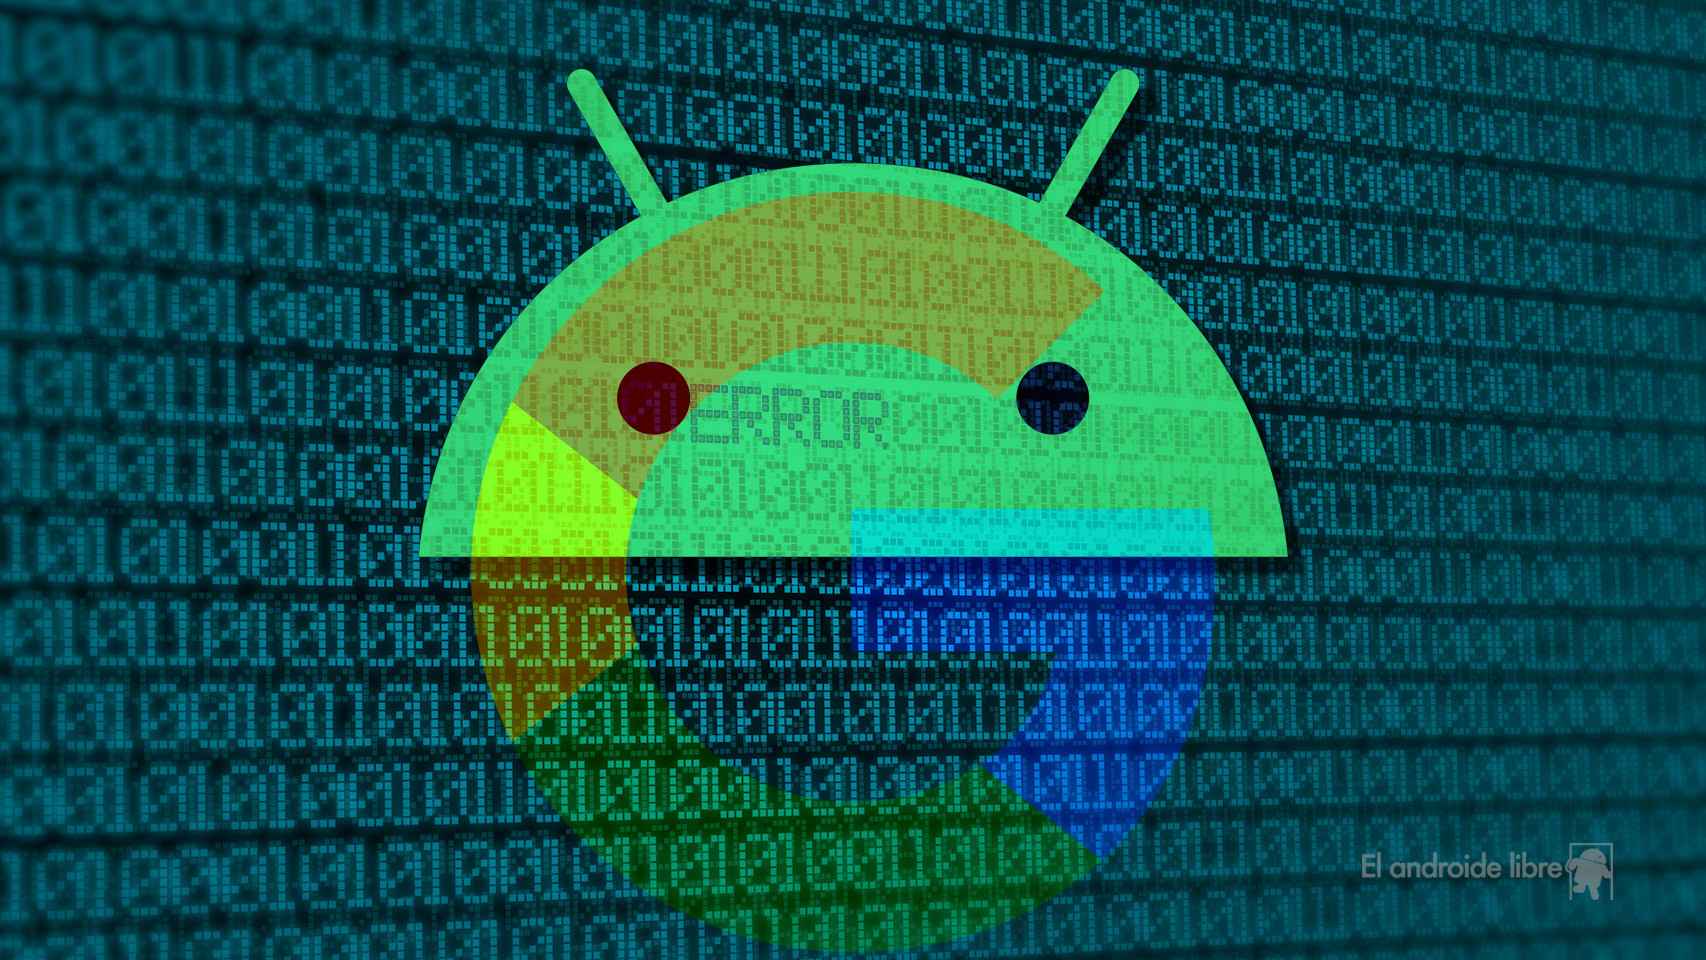 Encontrar vulnerabilidades en las apps de Google en Android ahora se paga